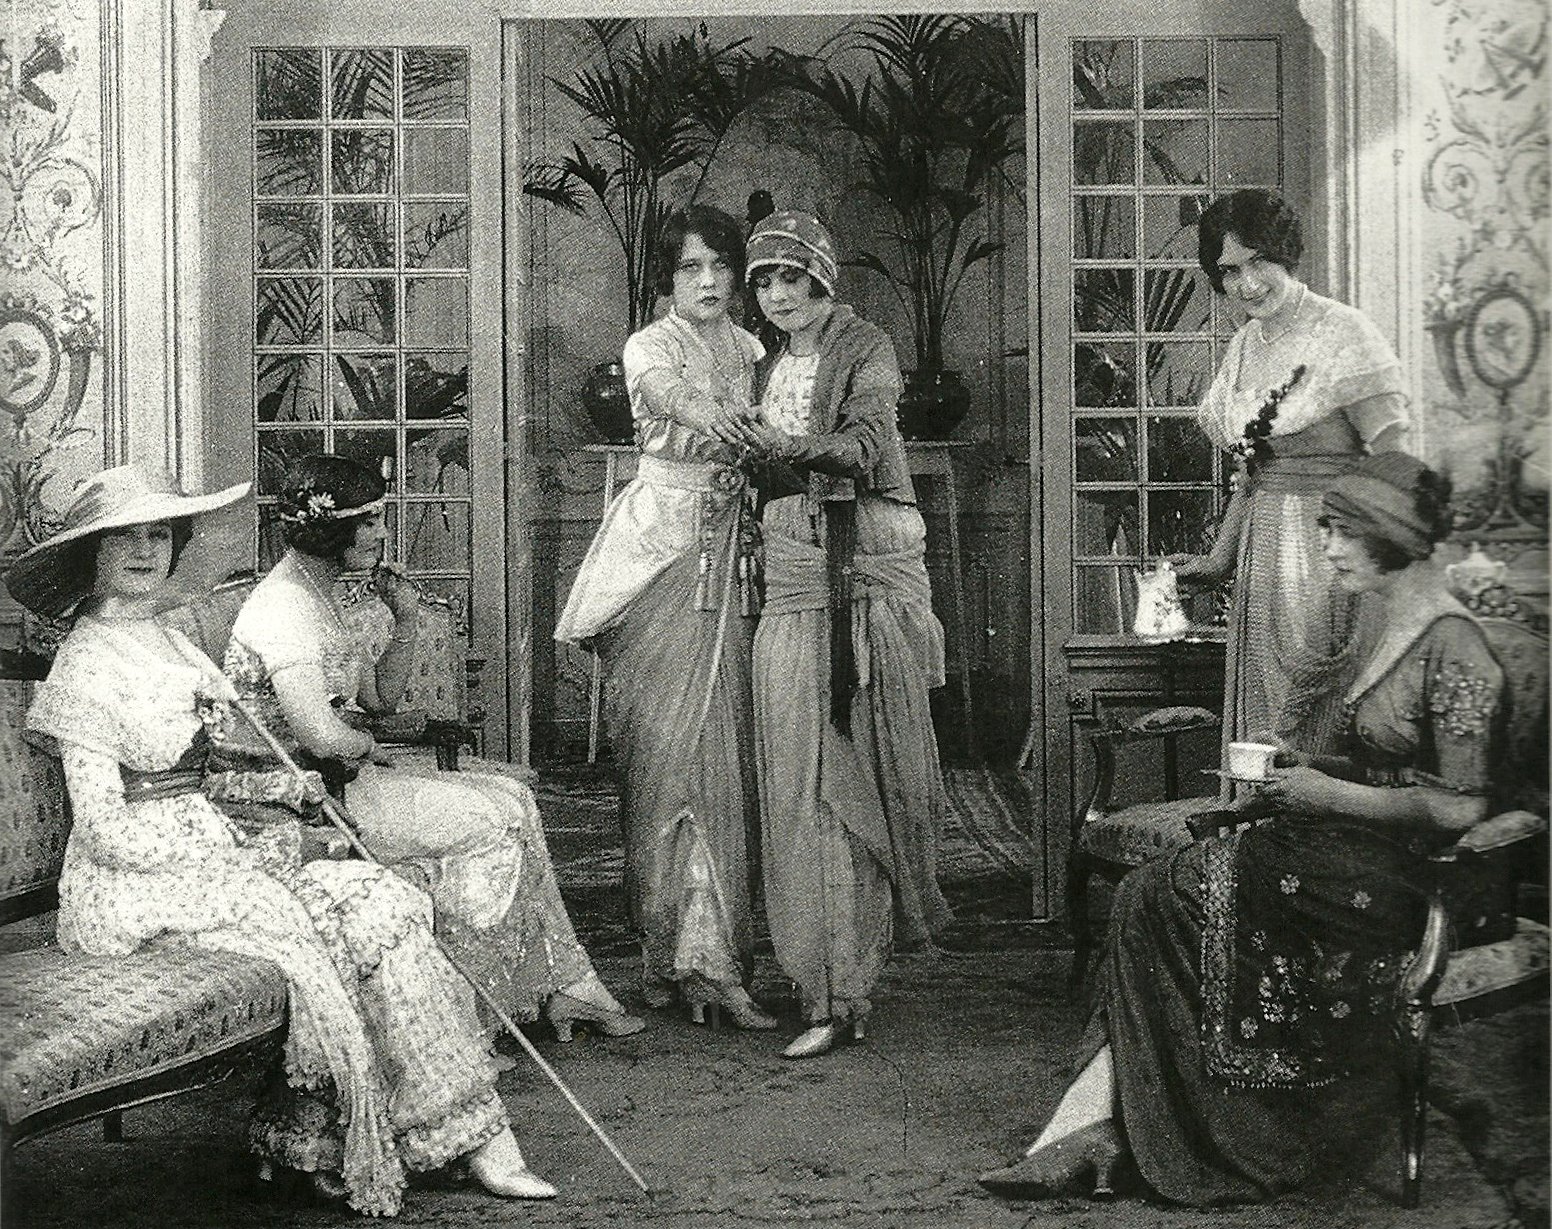 Paris, 1913, mannequins dance tango